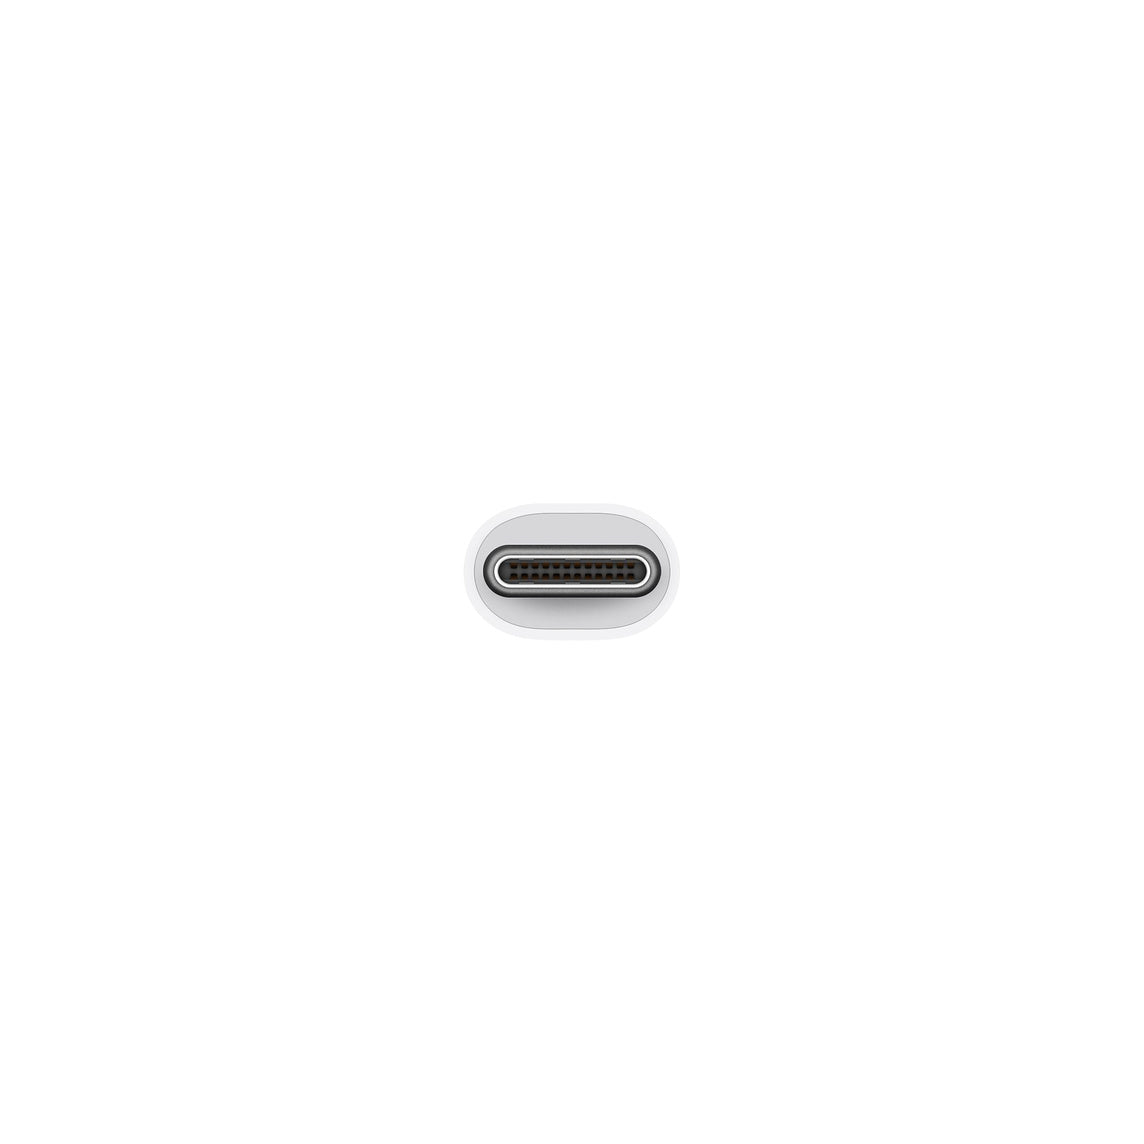 Apple USB-C Digital AV